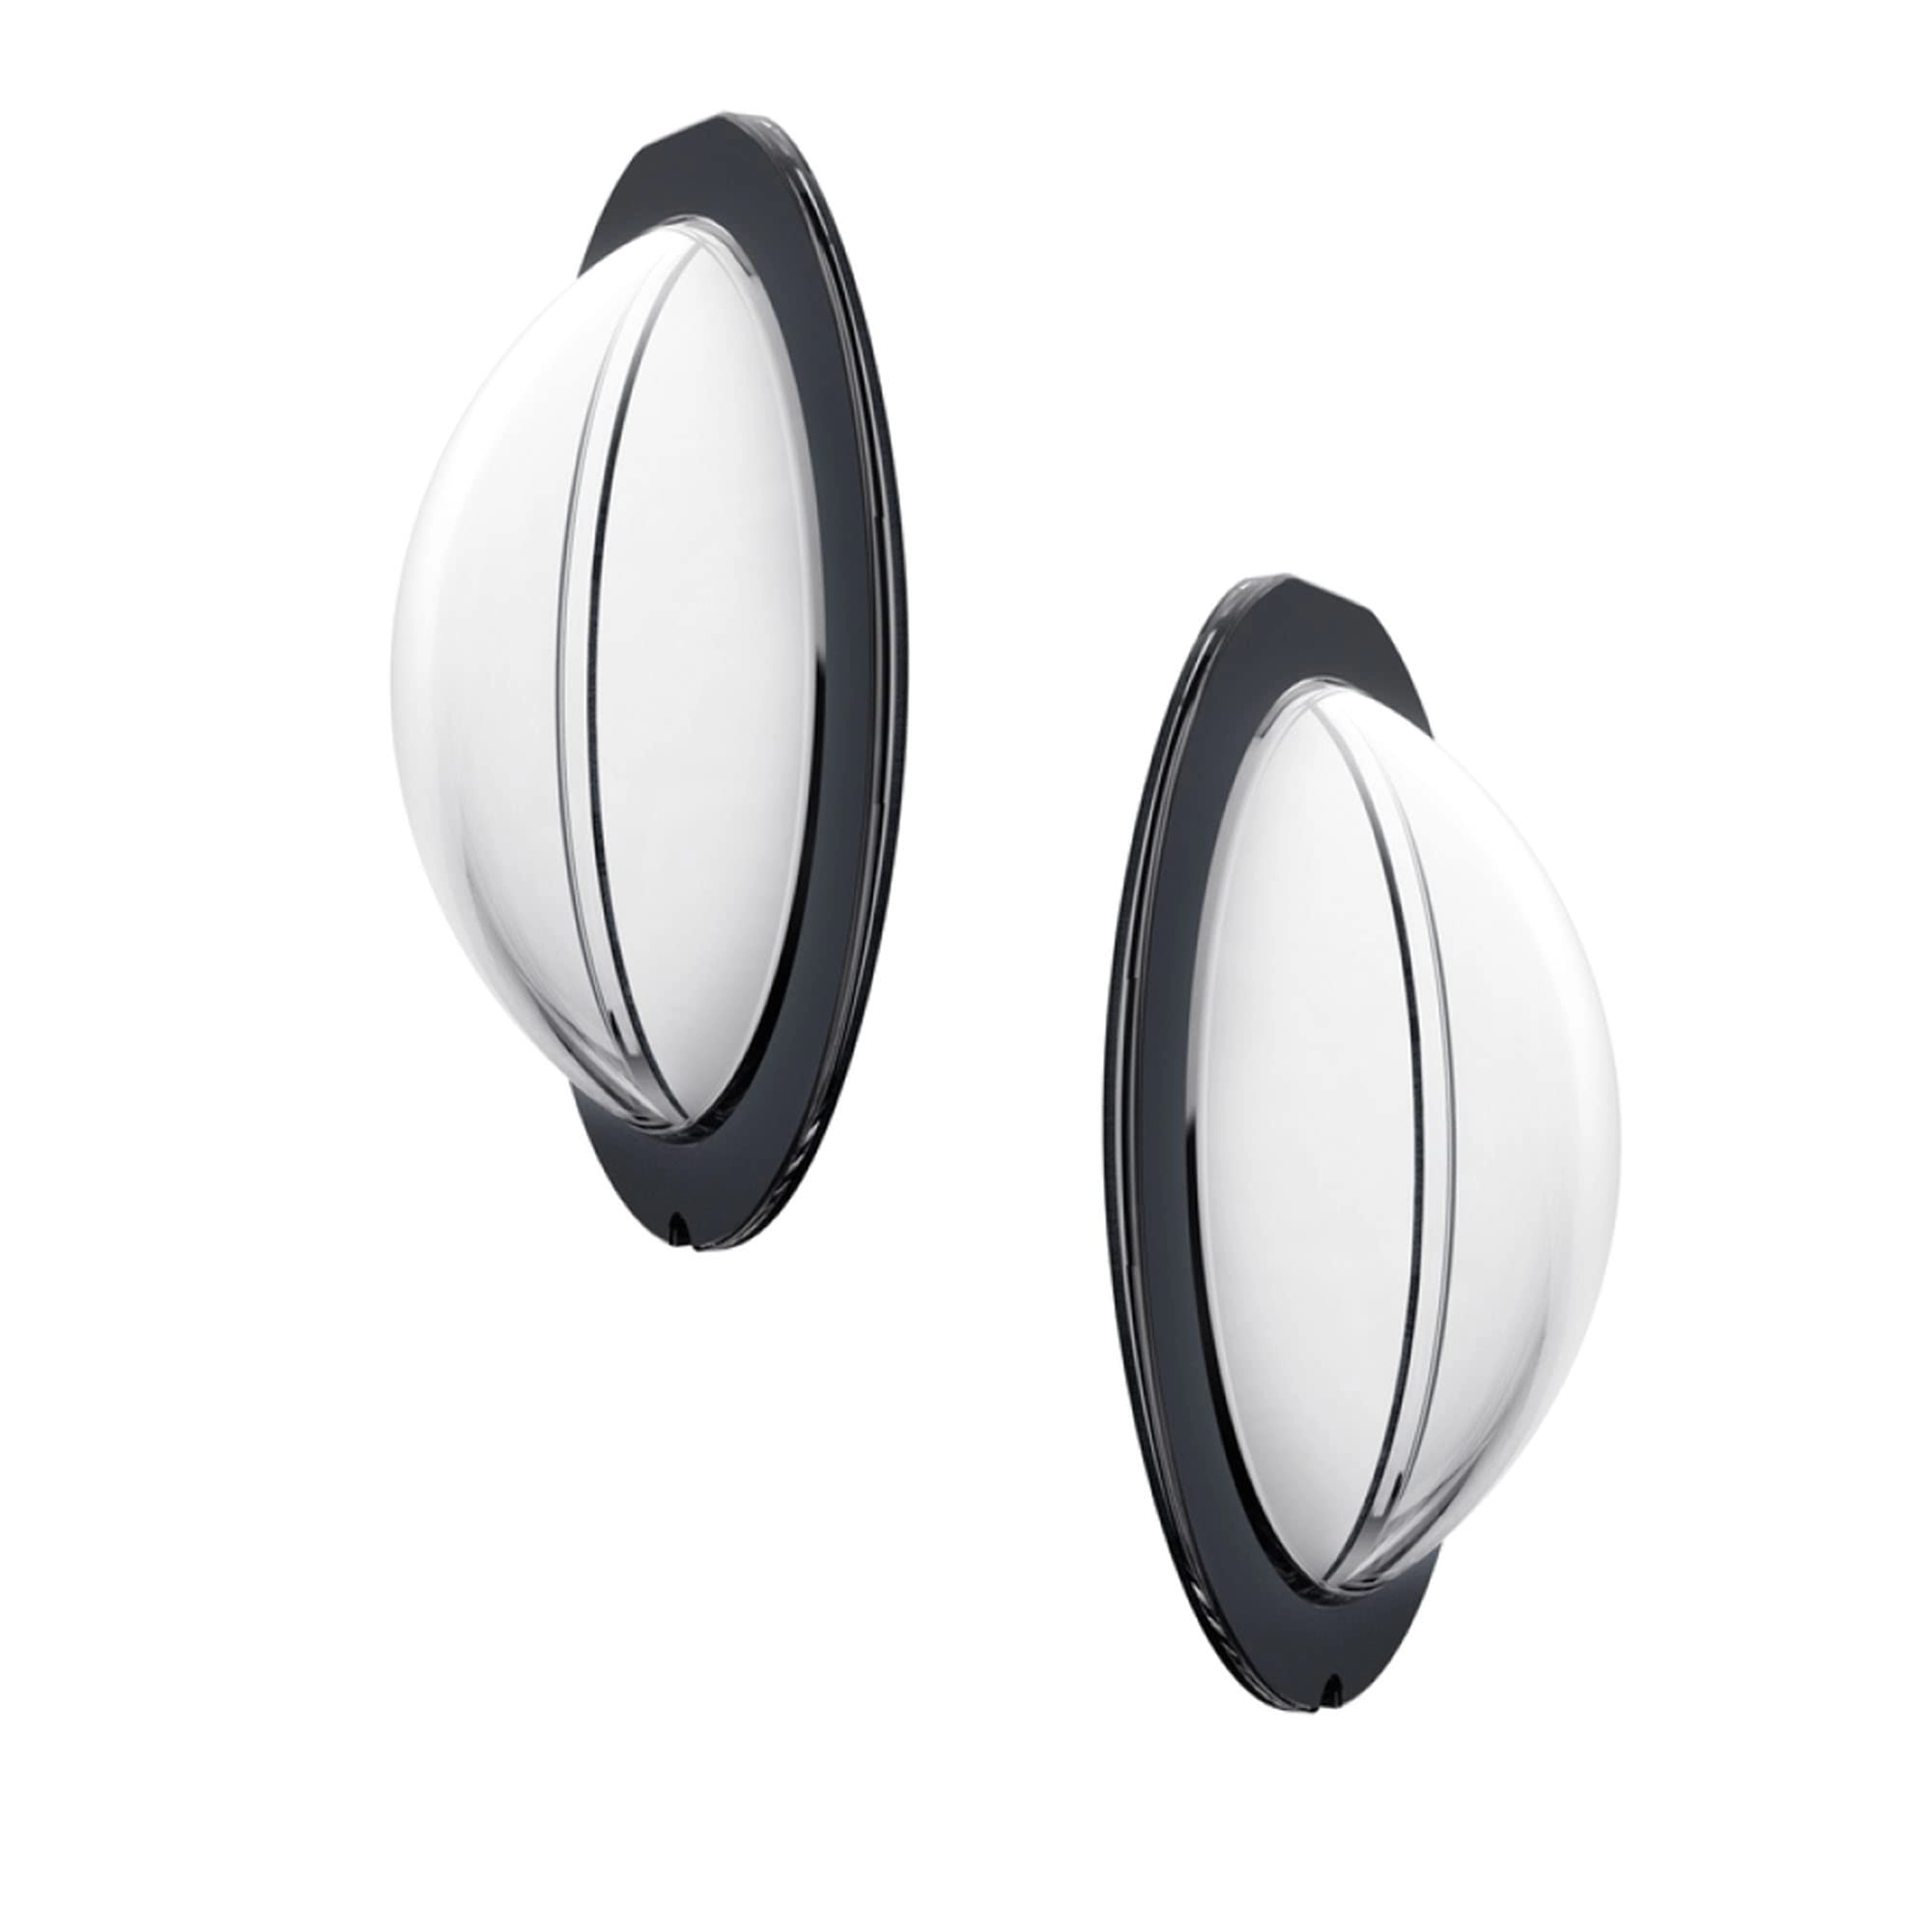 INSTA 360 X3 Sticky Lens Guards